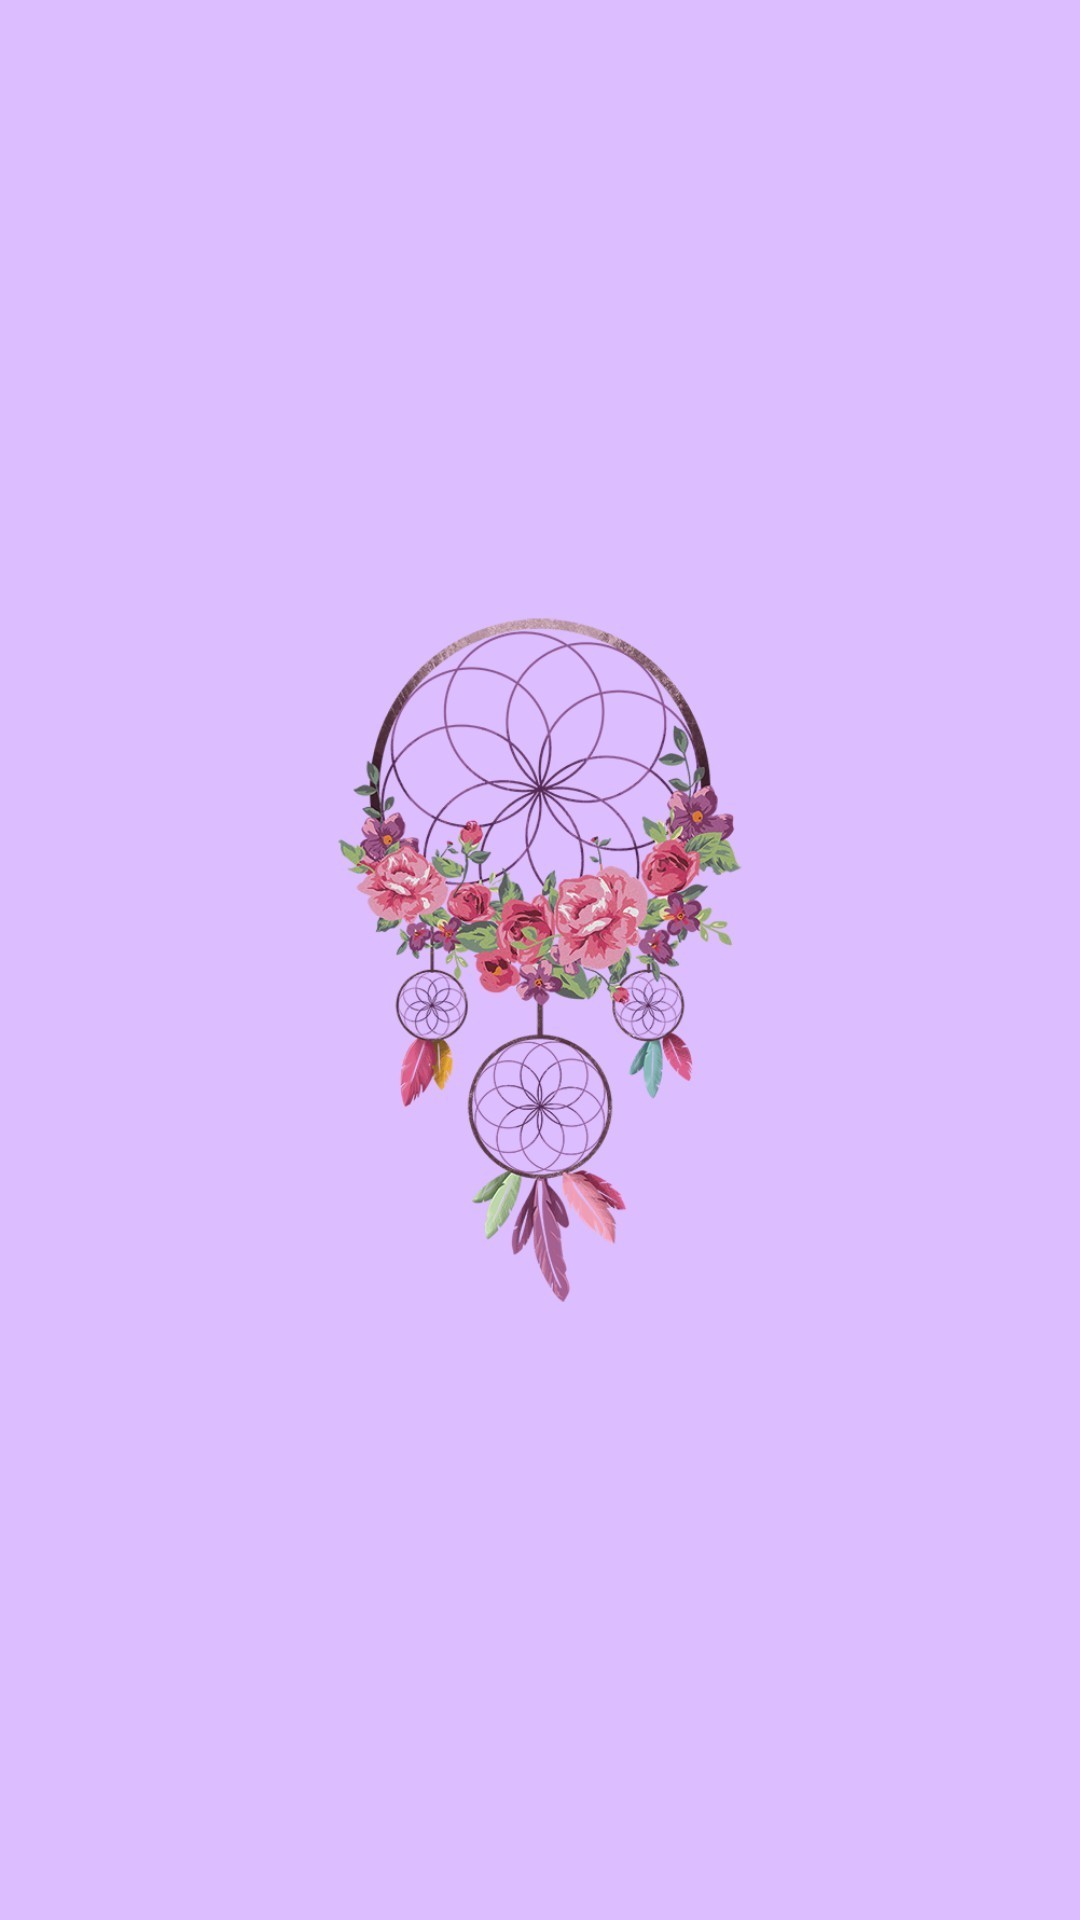 carta da parati dreamcatcher tumblr,prodotto,rosa,viola,lilla,illustrazione